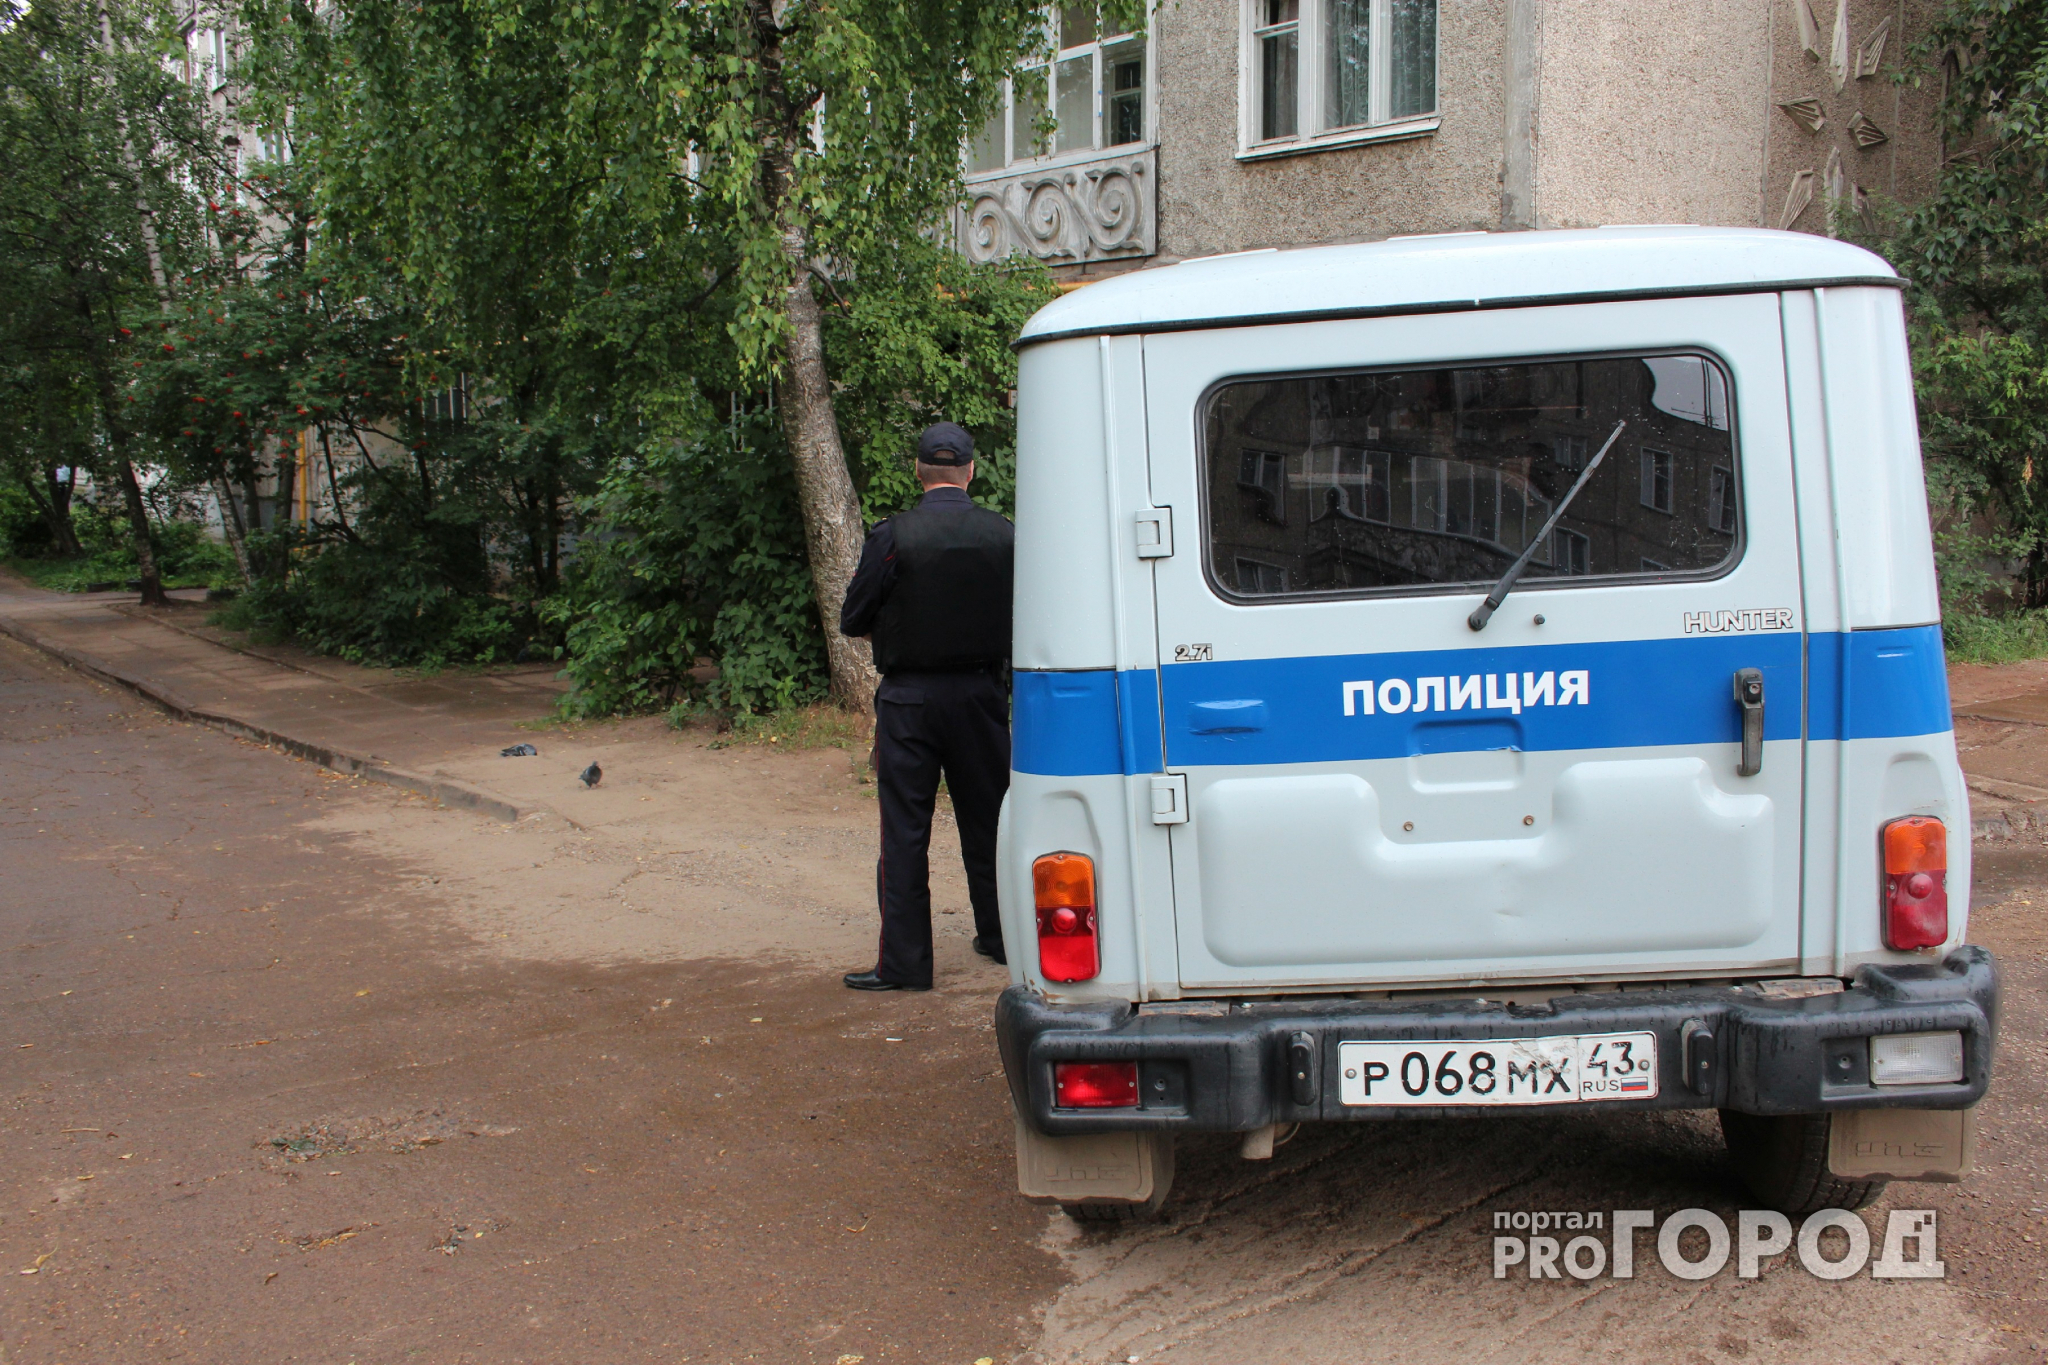 Что обсуждают в Кирове: смертельное ДТП и убийство 26-летнего парня